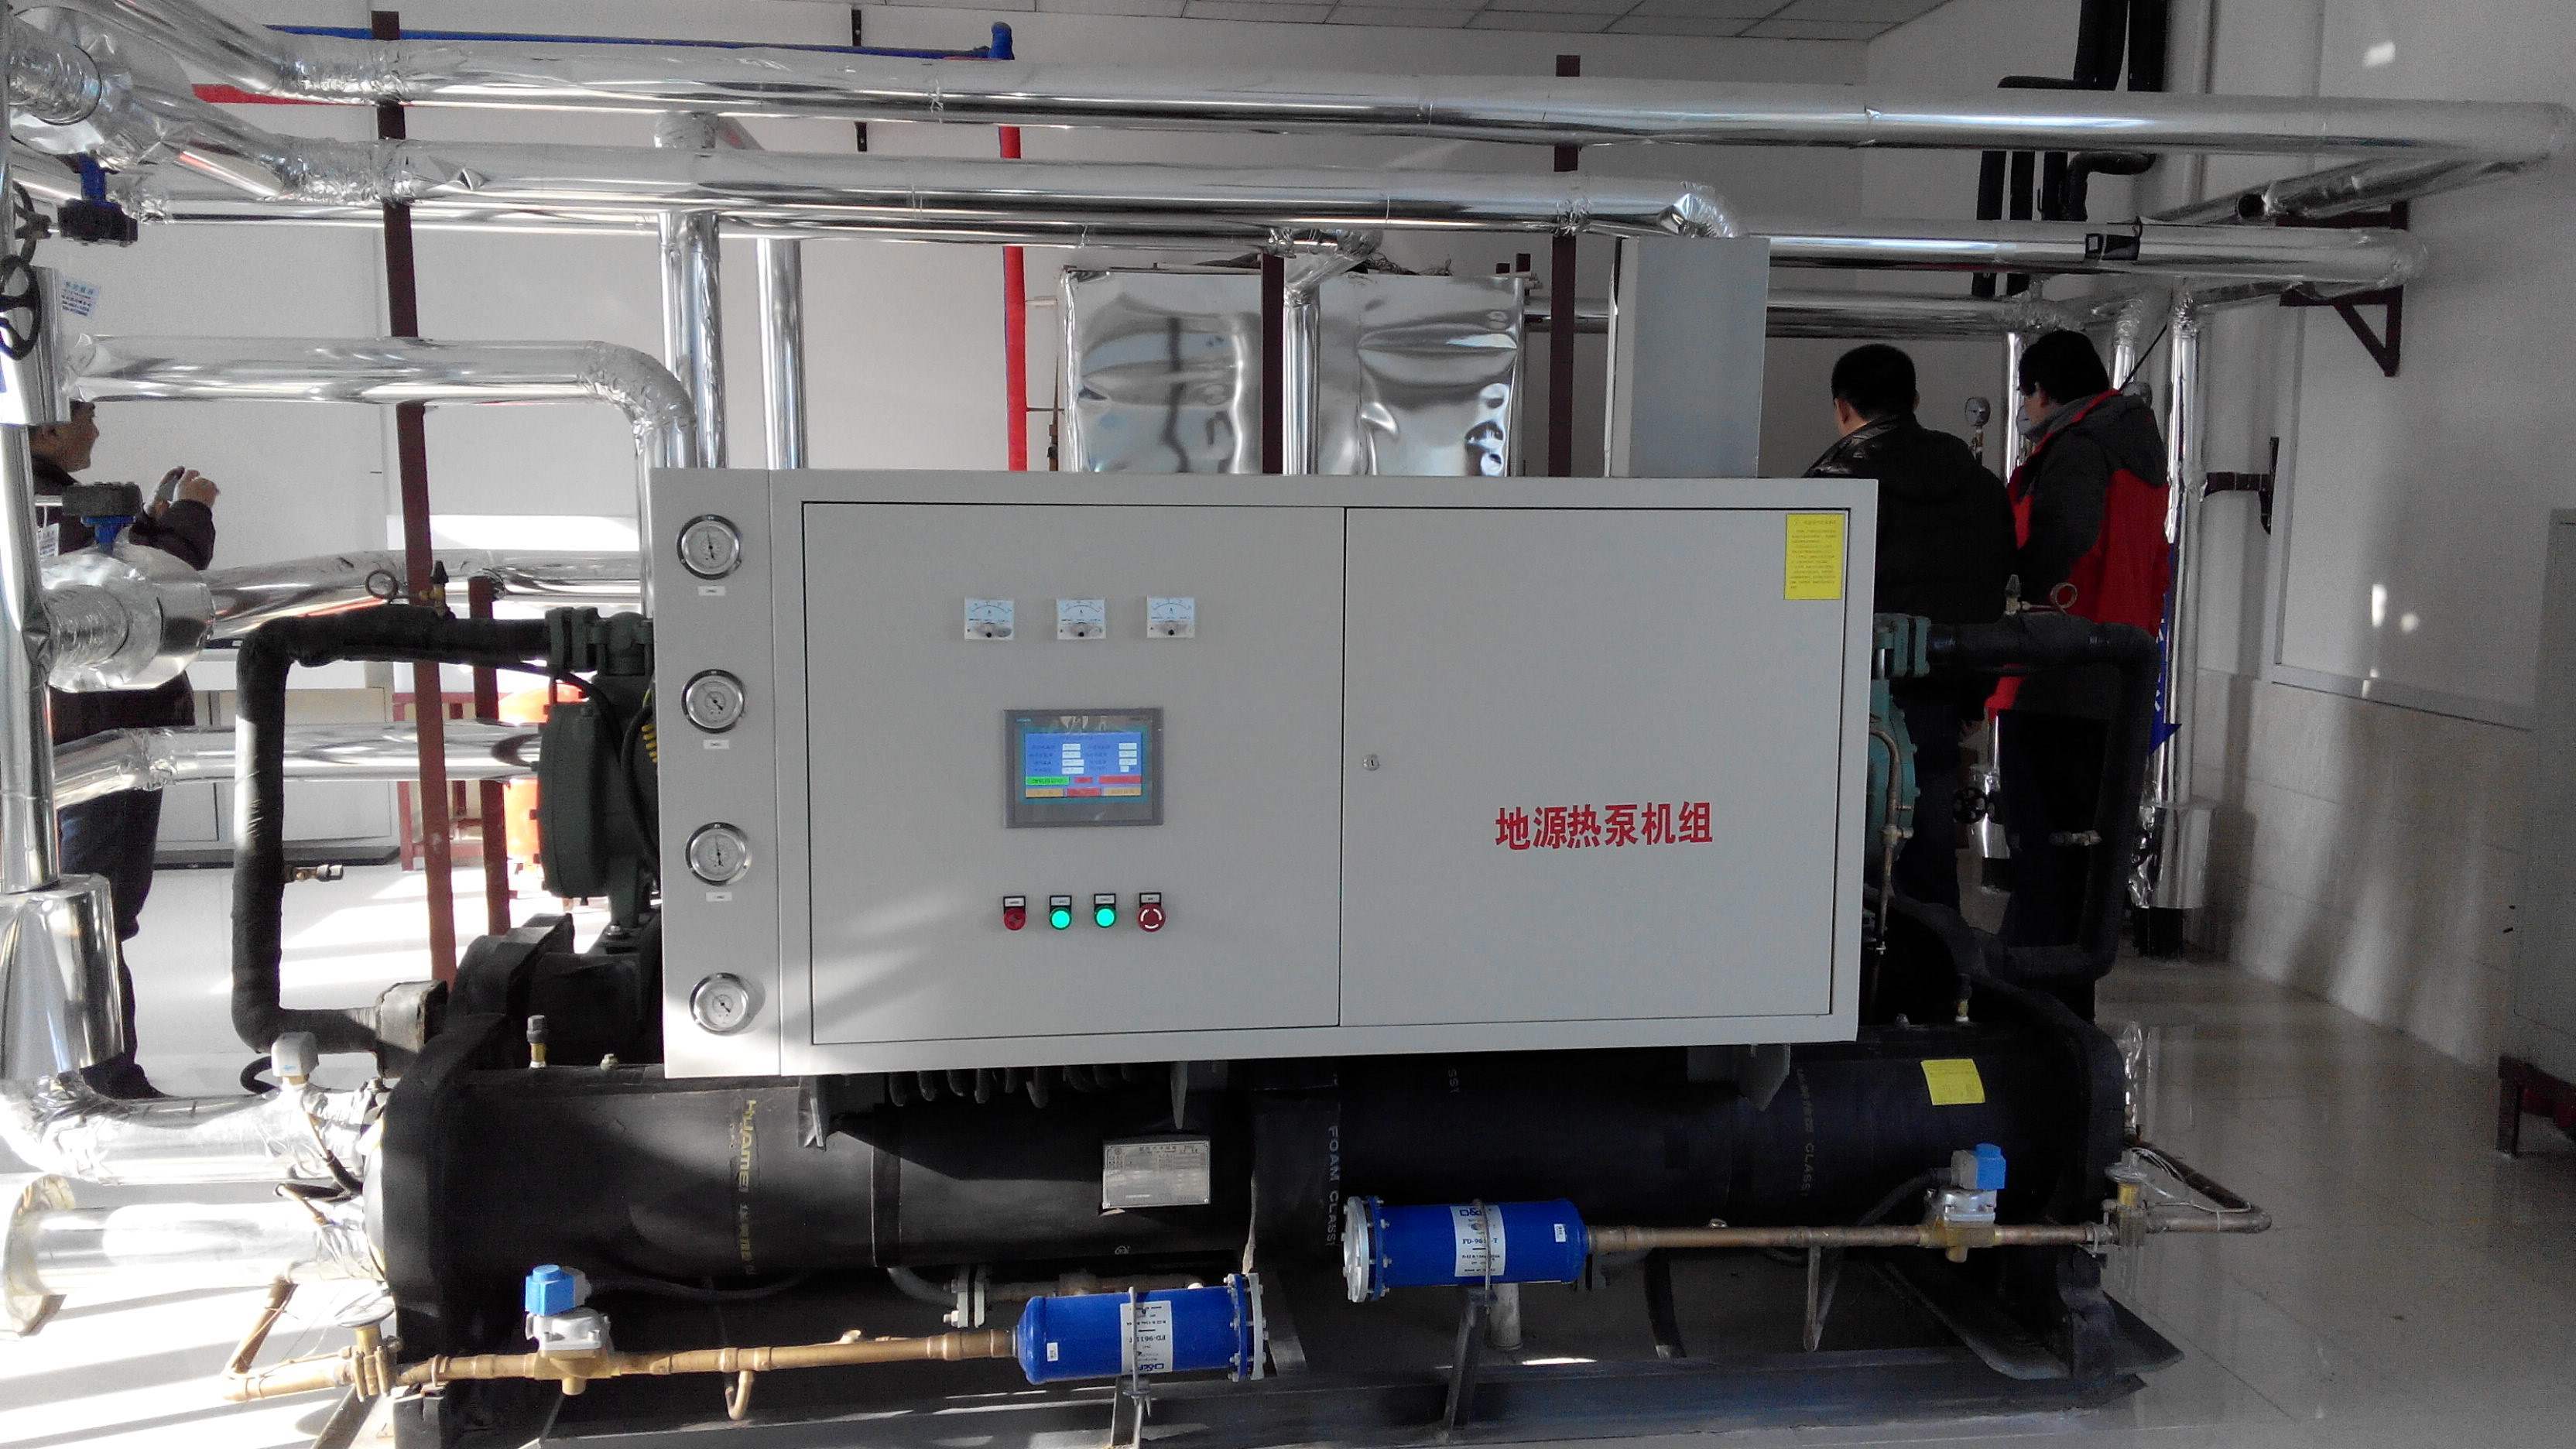 和水源热泵不同,水环系统的工作原理是在水或空气源热泵机组加热时